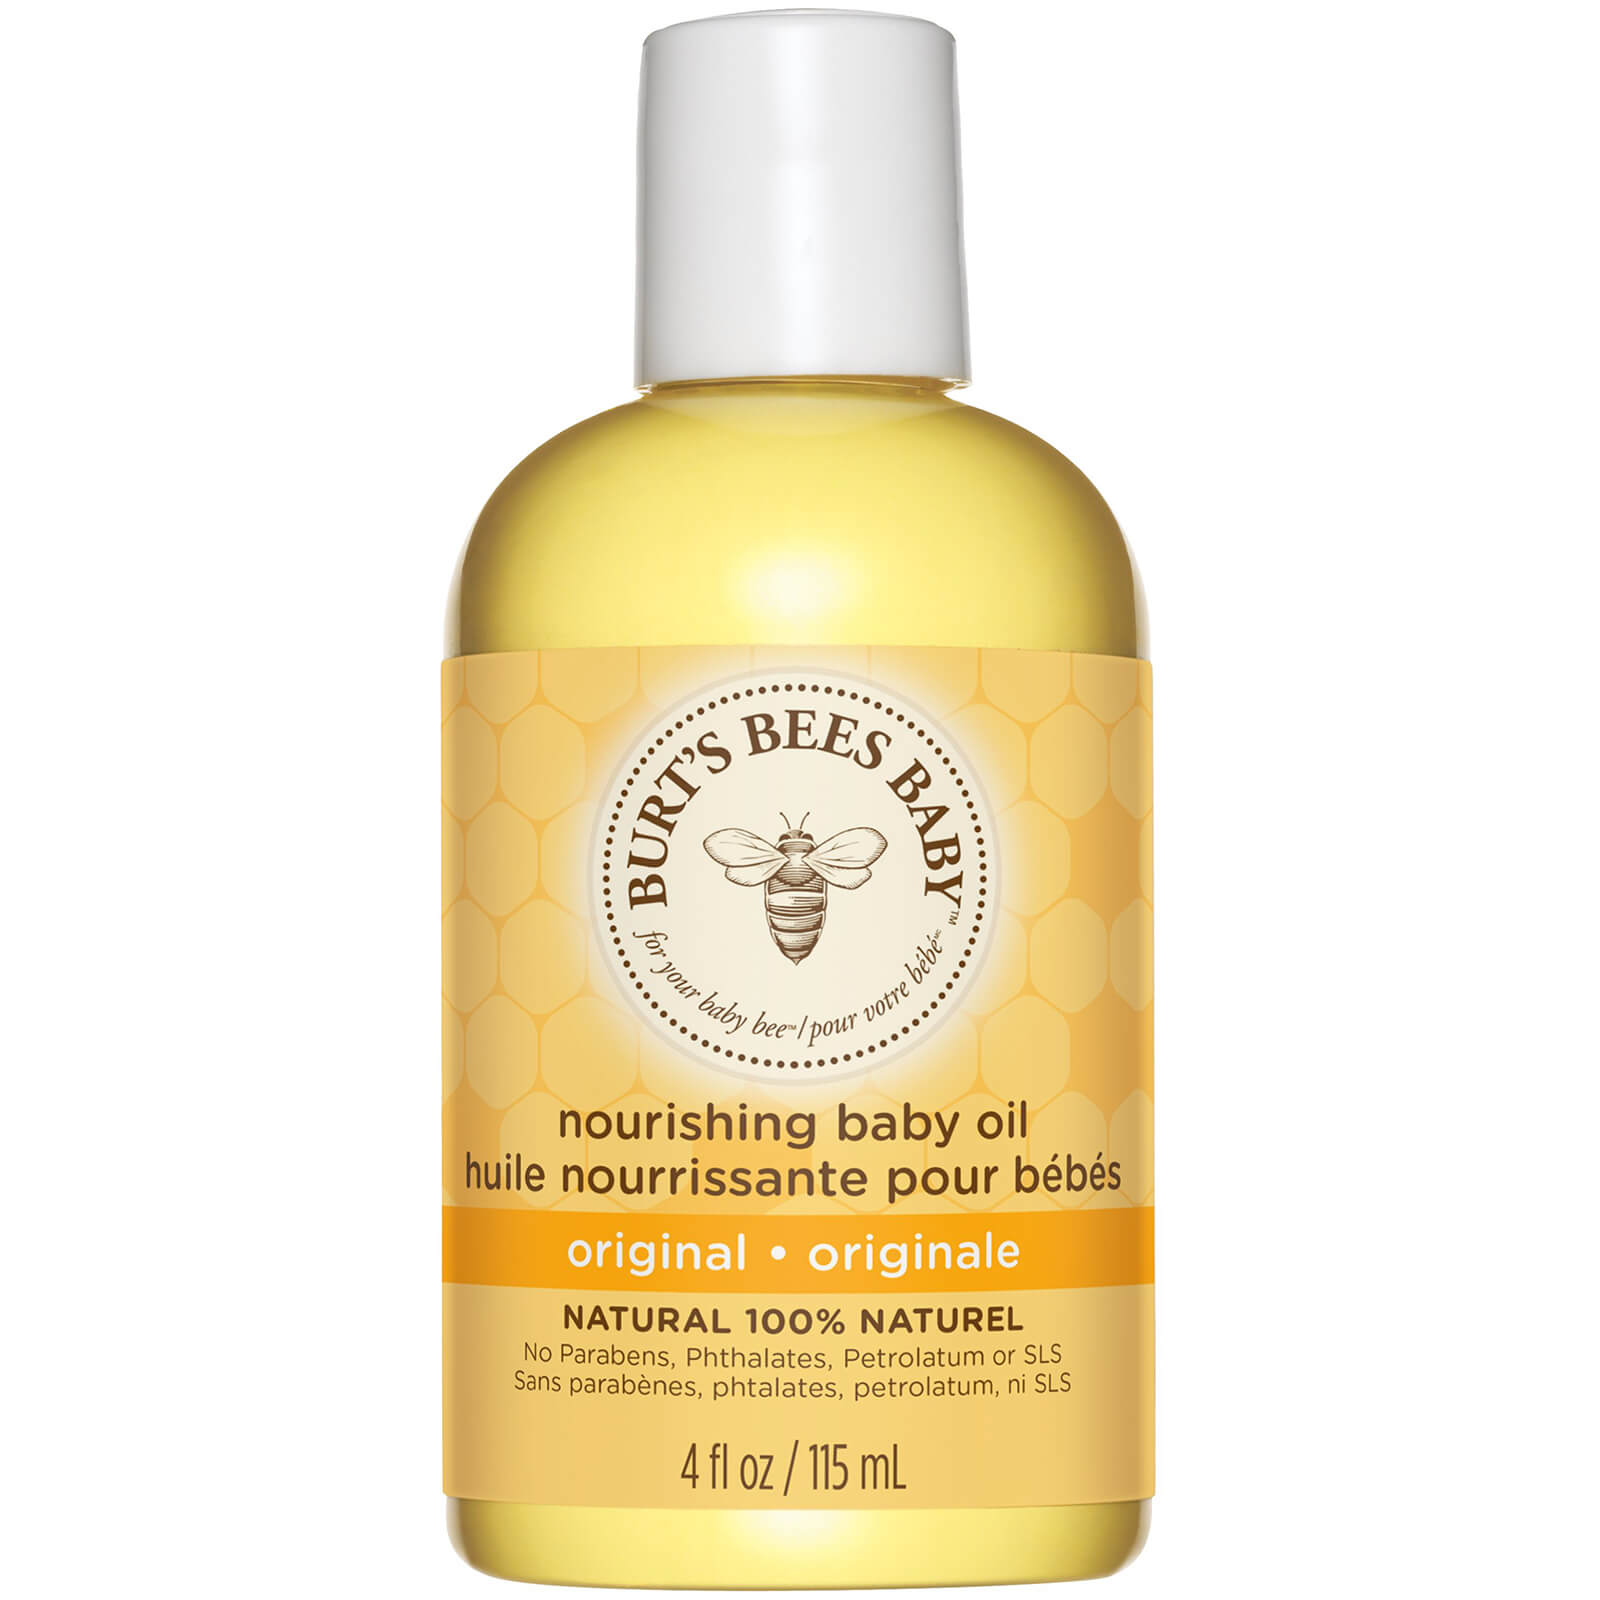 burts-bees-baby-oil-nourishing-hair